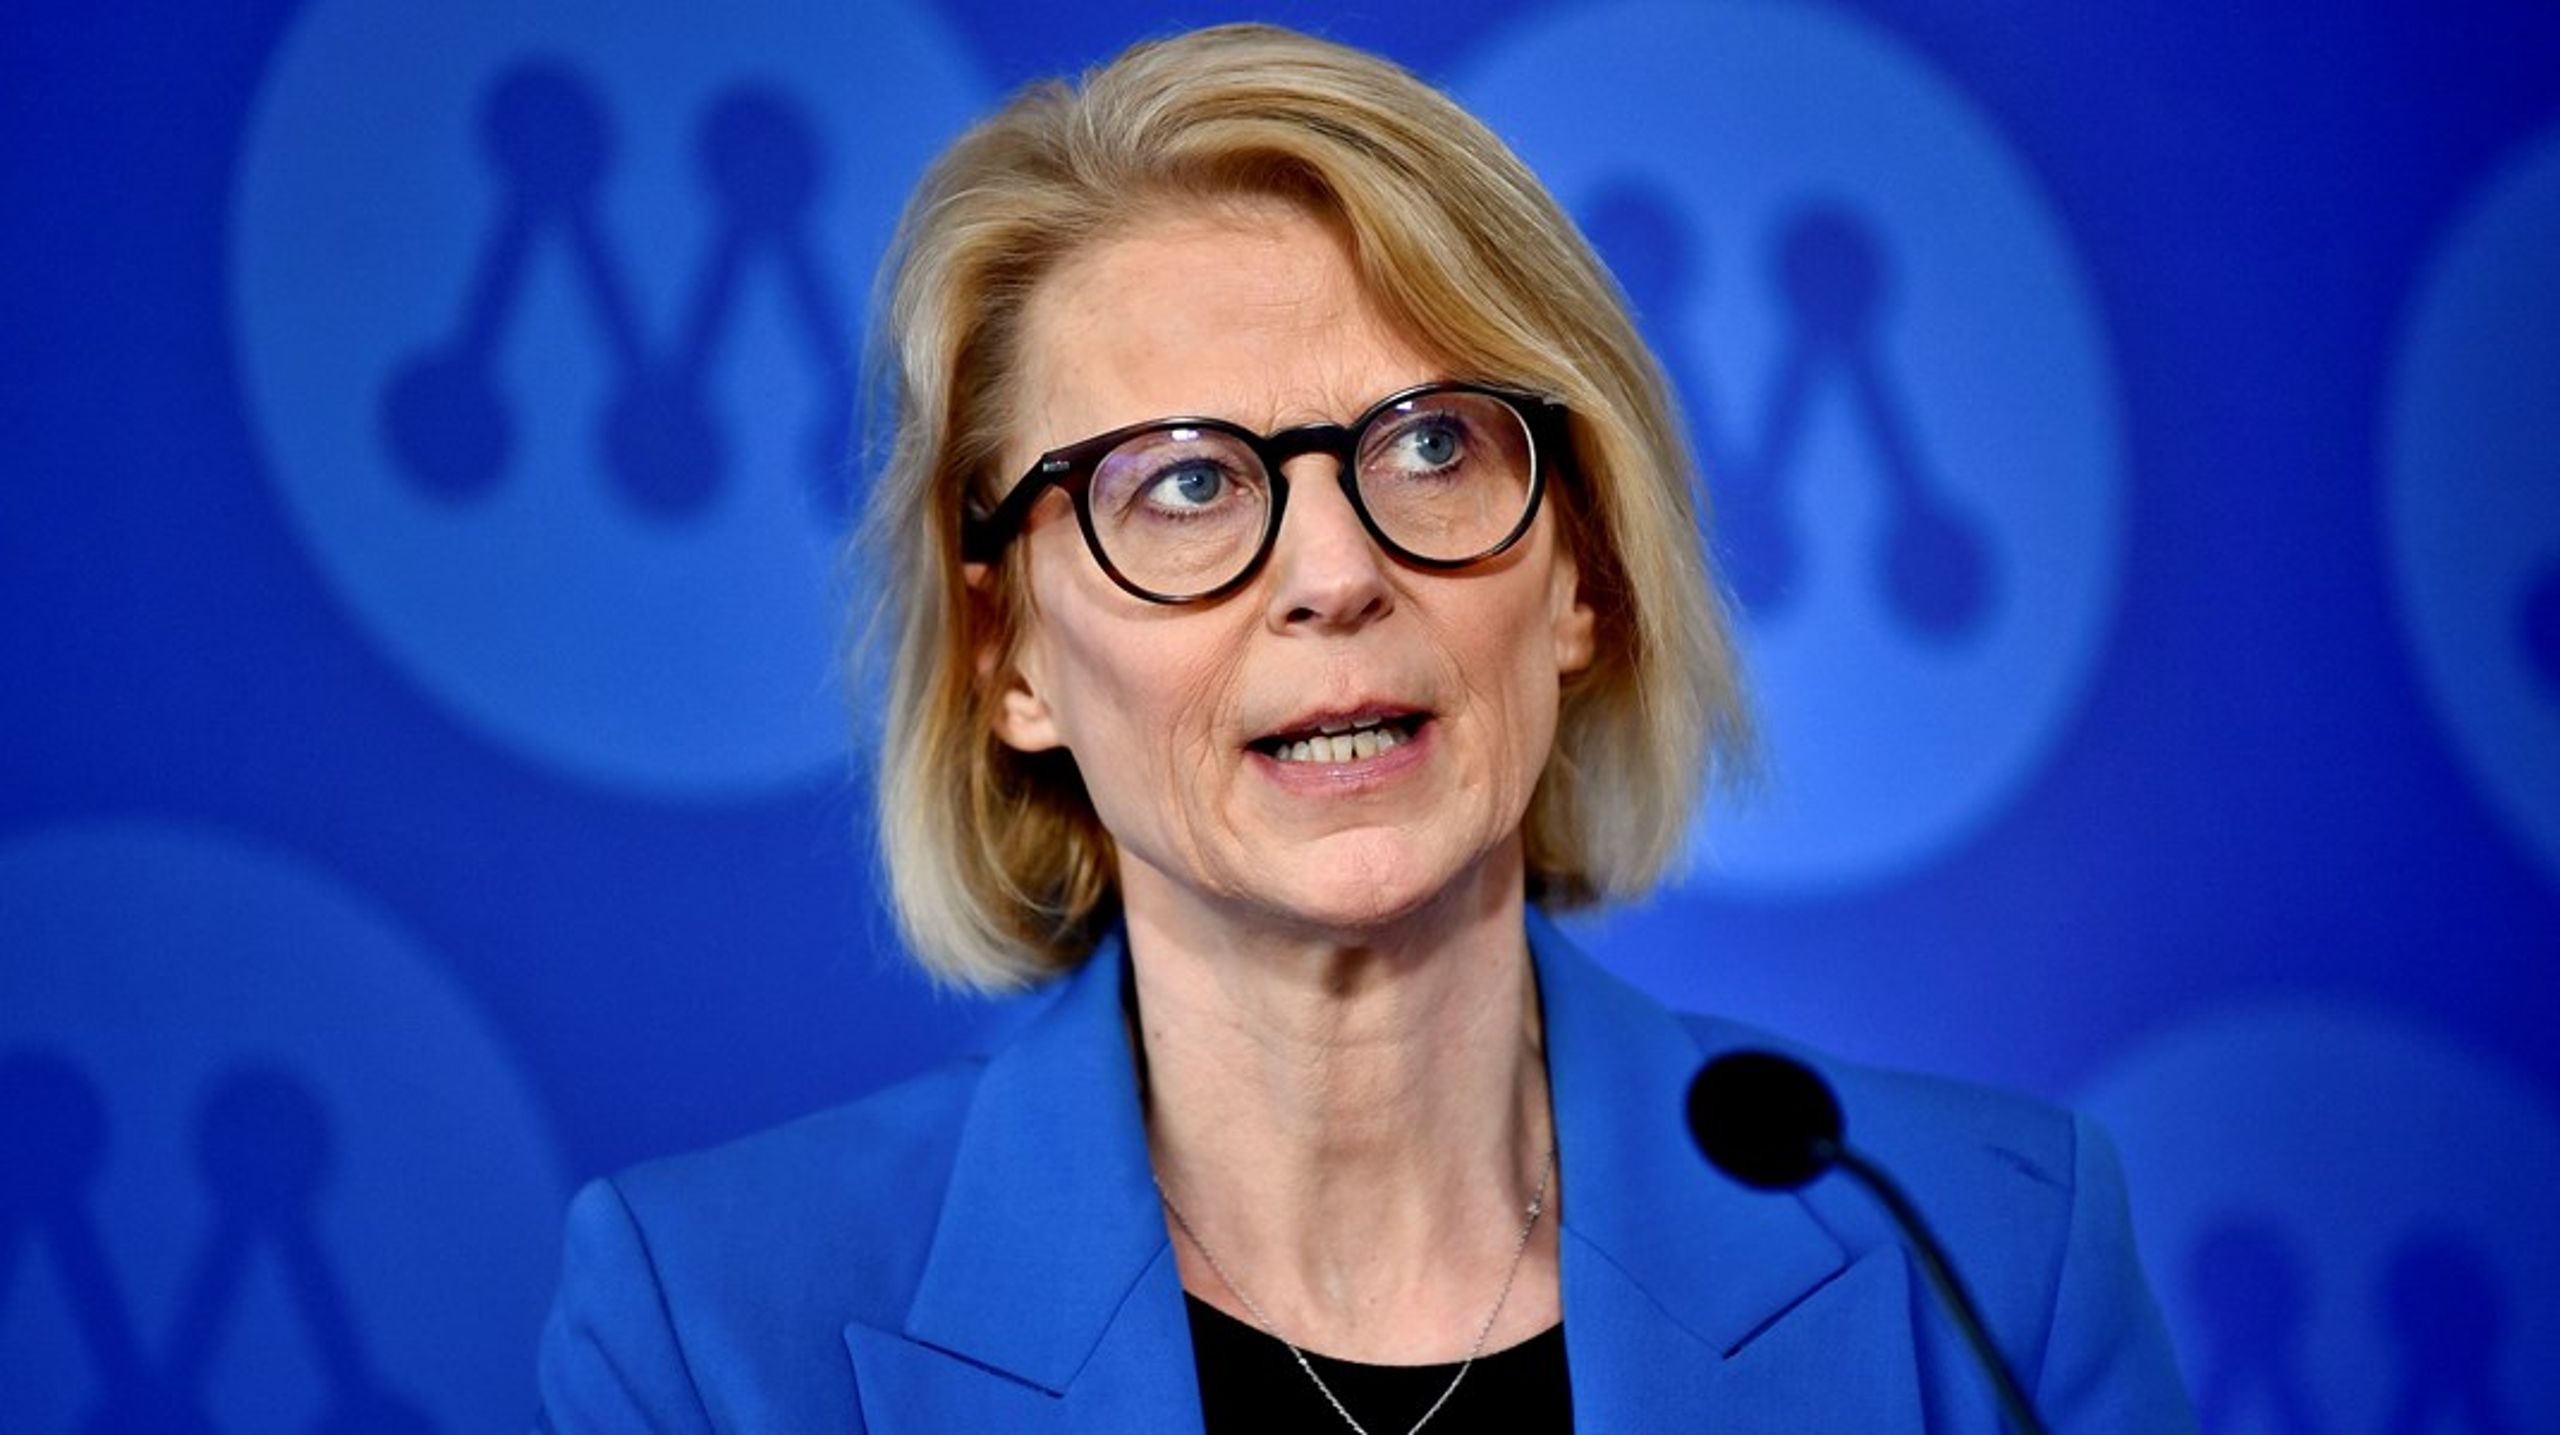 Aktivitetskravet är en del i den bidragsreform som finansminister Elisabeth Svantesson presenterade under Moderaternas Sverigemöte.